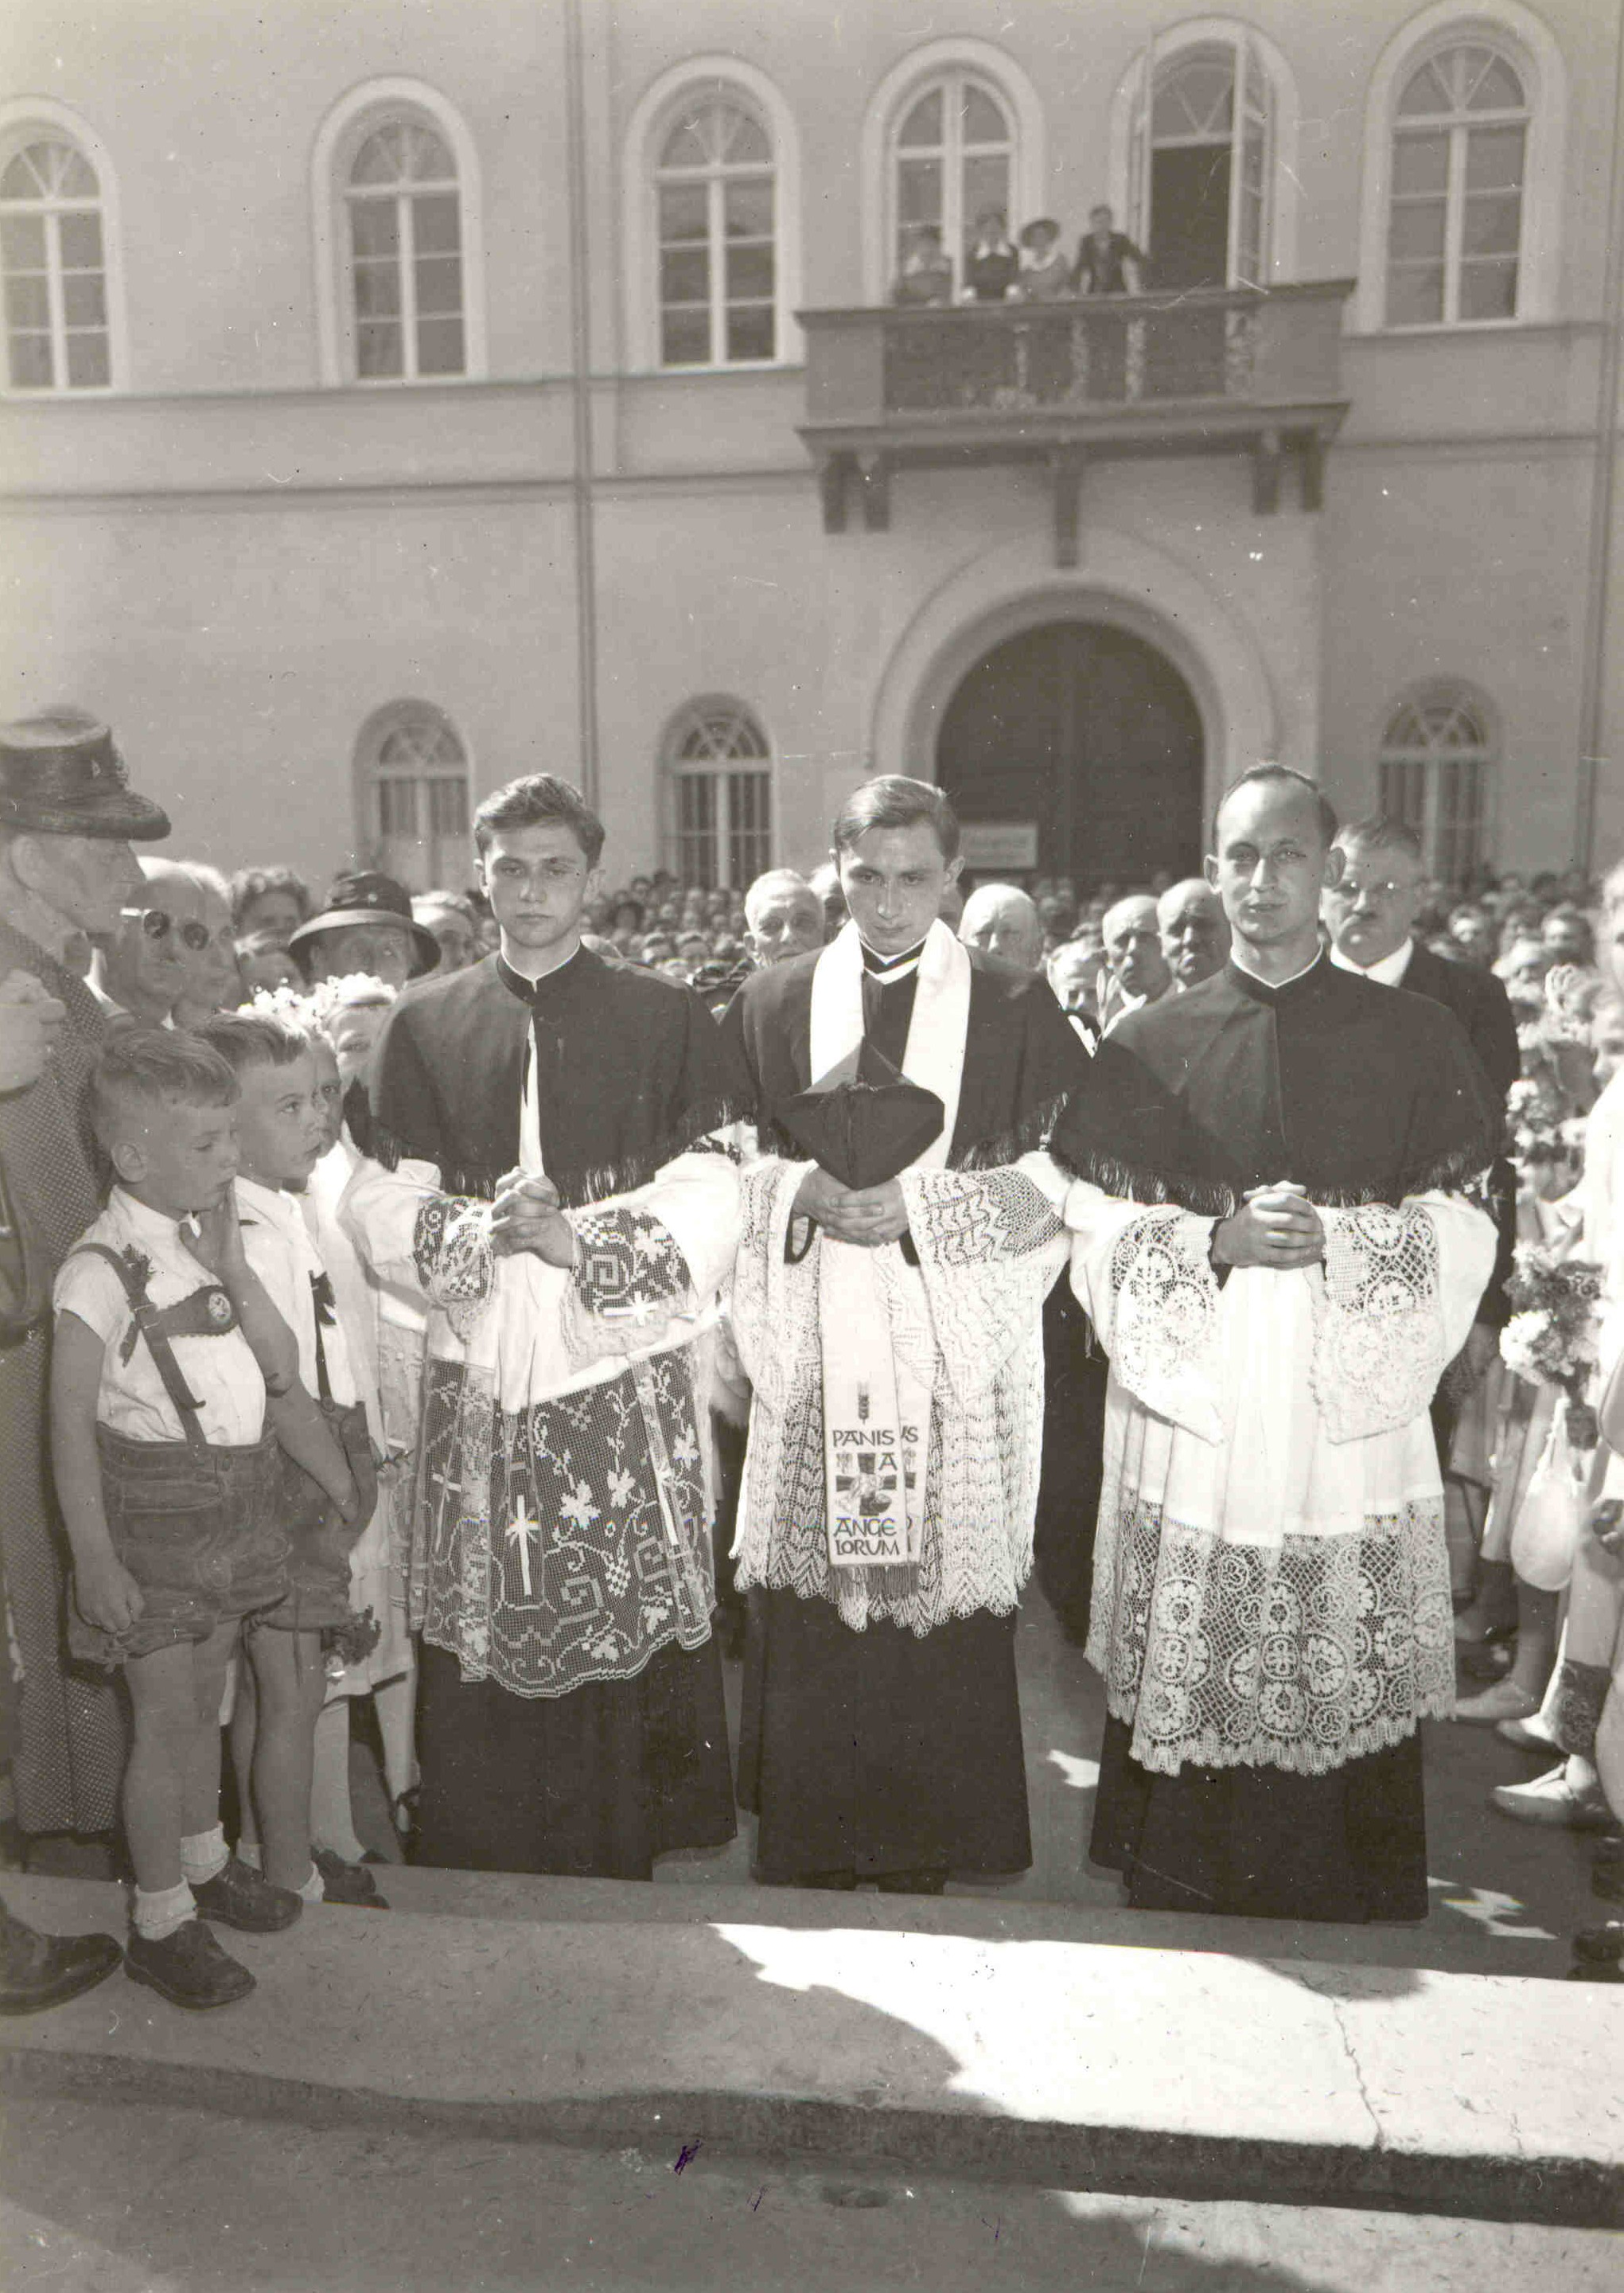 Joseph und Georg Ratzinger sowie Rupert Berger (von links) bei der Primiz in St. Oswald am 8. Juli 1951. (© Gust Tögel, München)